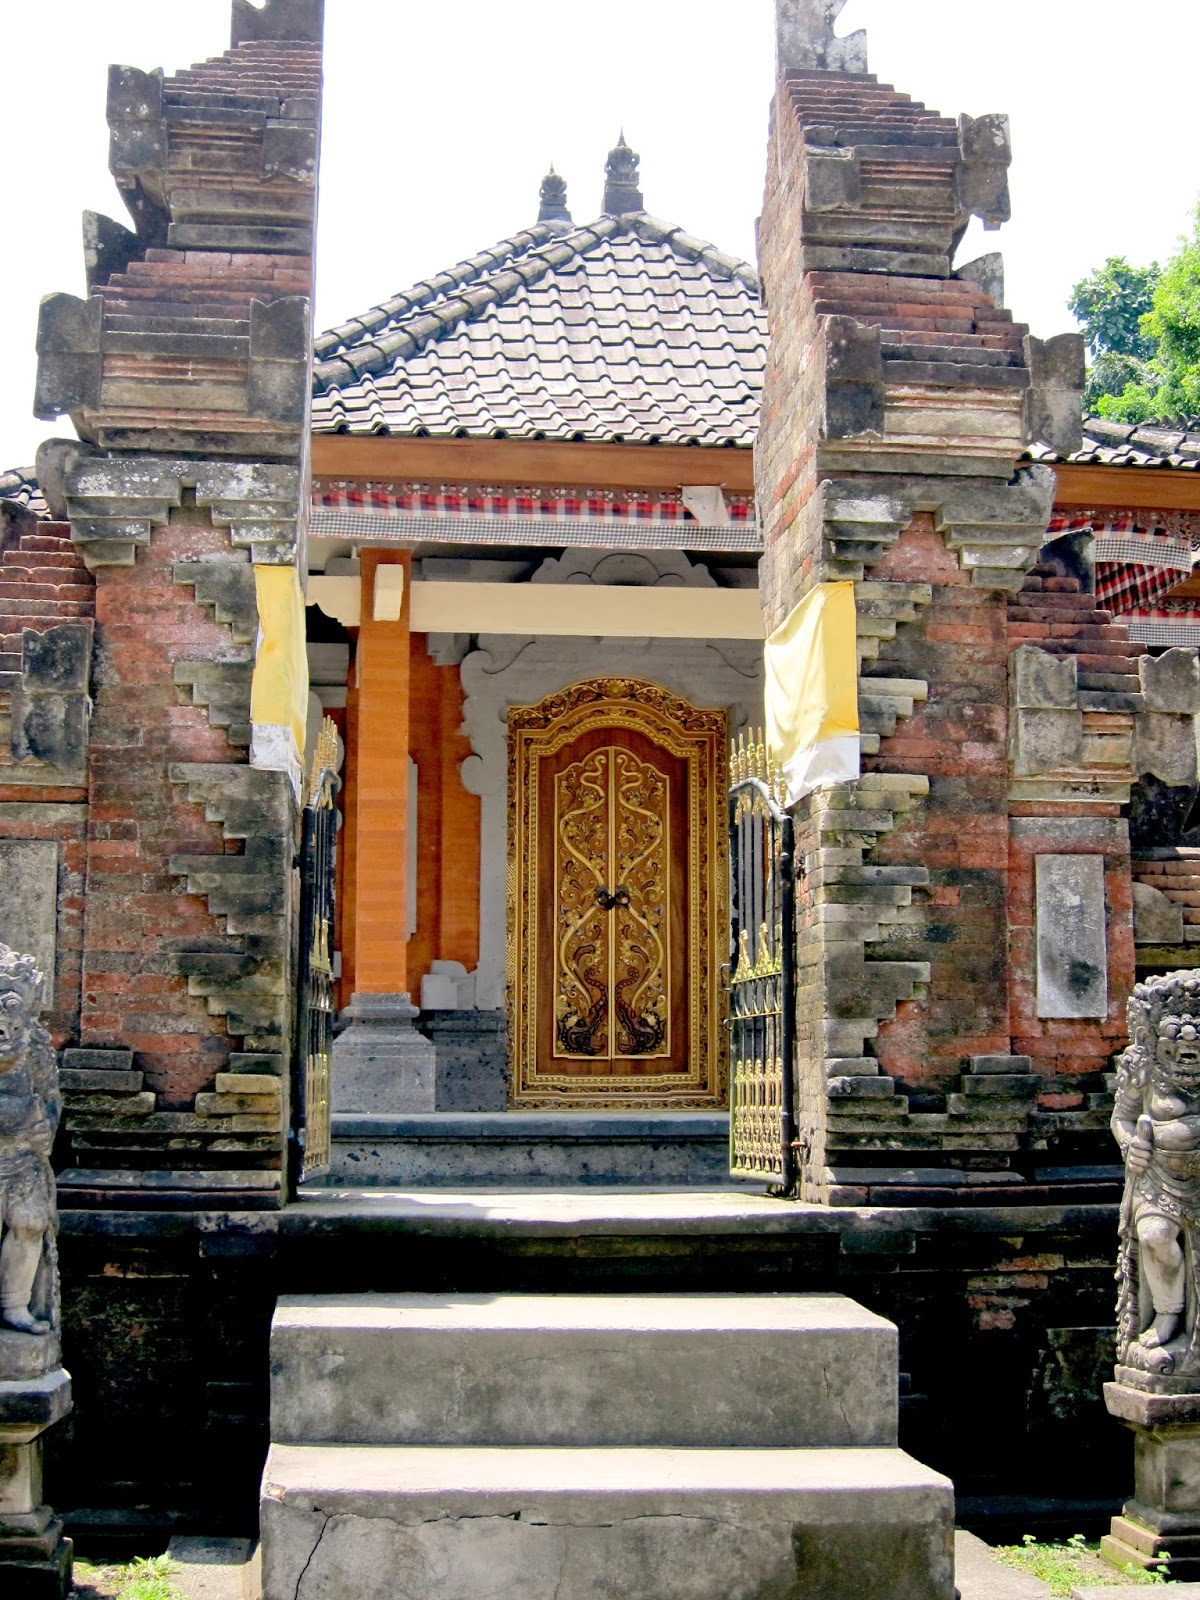 【峇里島自由行】Bali慶生之旅D2(上): 象洞/聖泉寺/Tegallalang/ I Made Joni。造訪烏布古蹟遺址